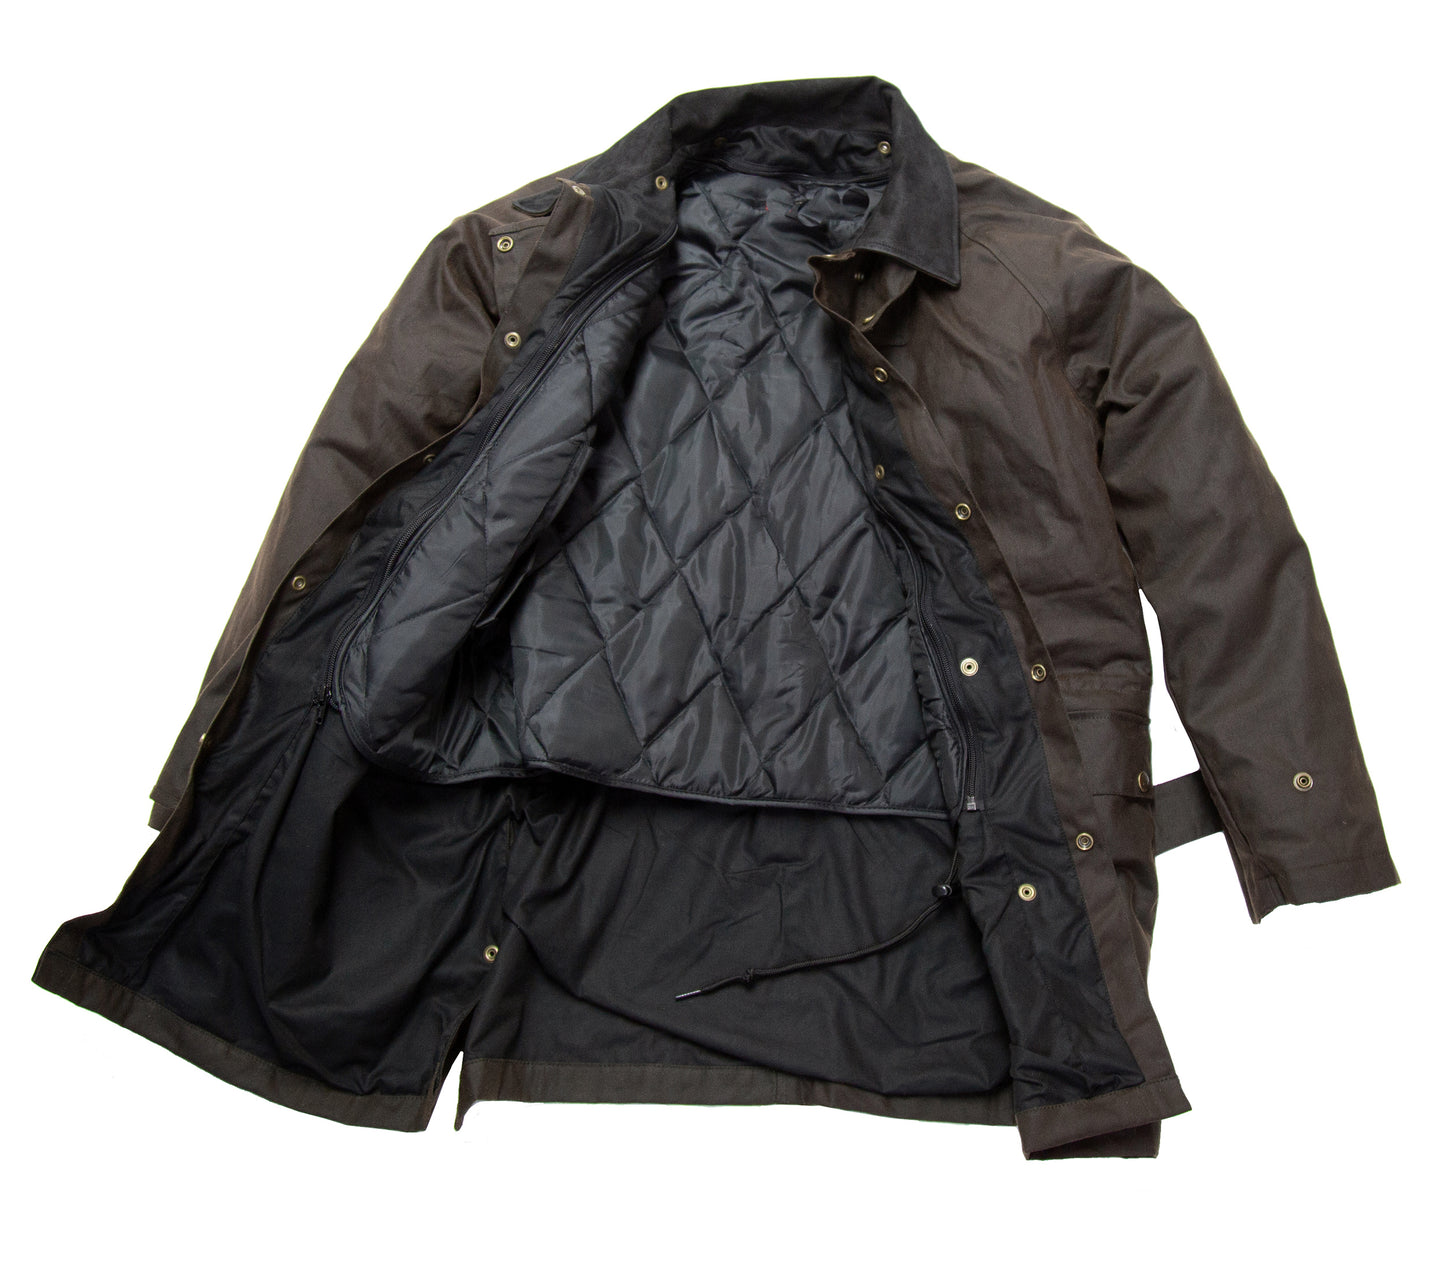 Ölzeug Jacke mit herausnehmbarem Winterfutter in schwarz & braun